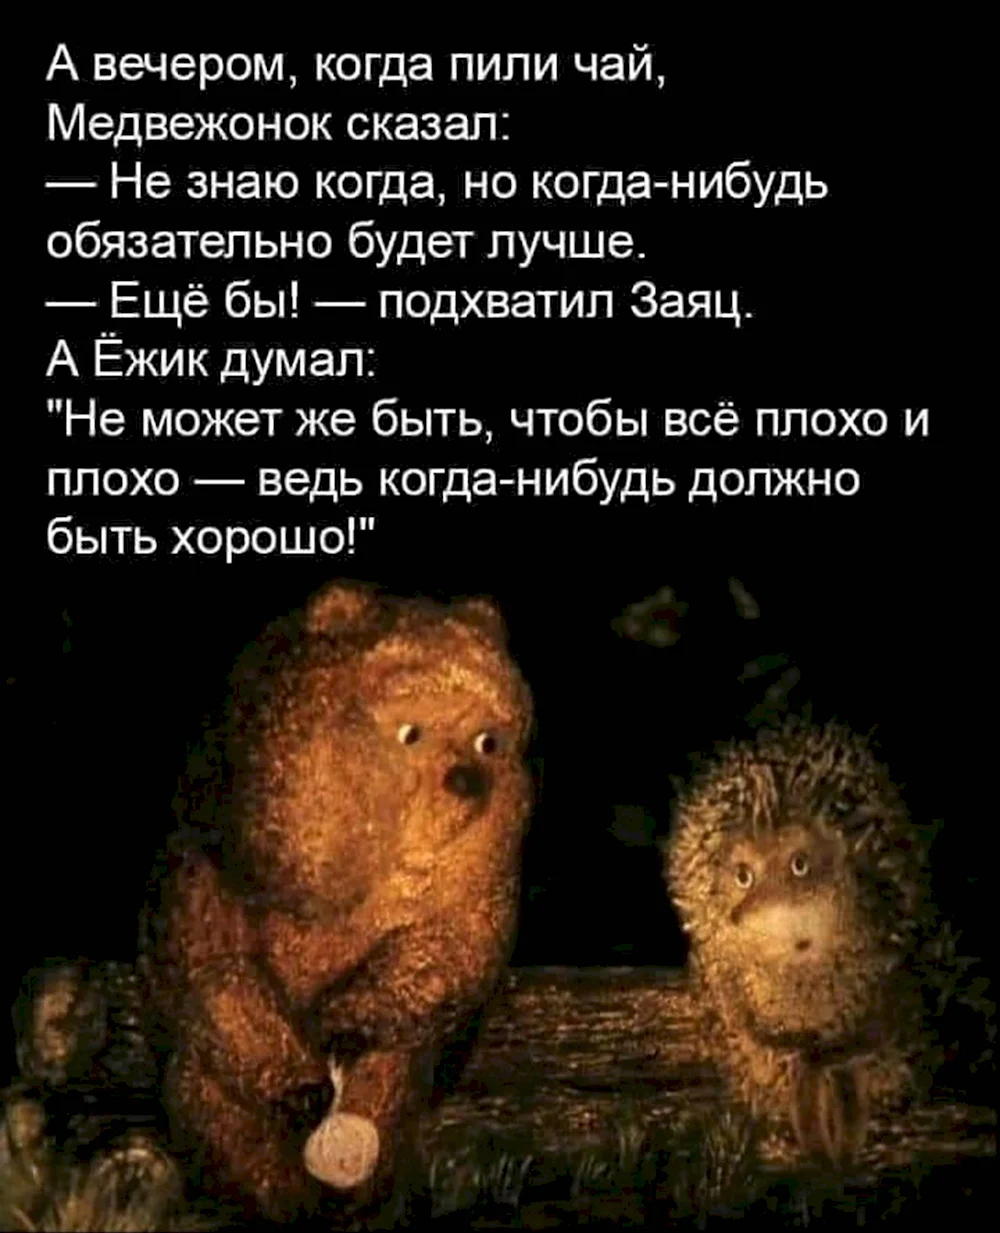 Ёжик и Медвежонок цитаты